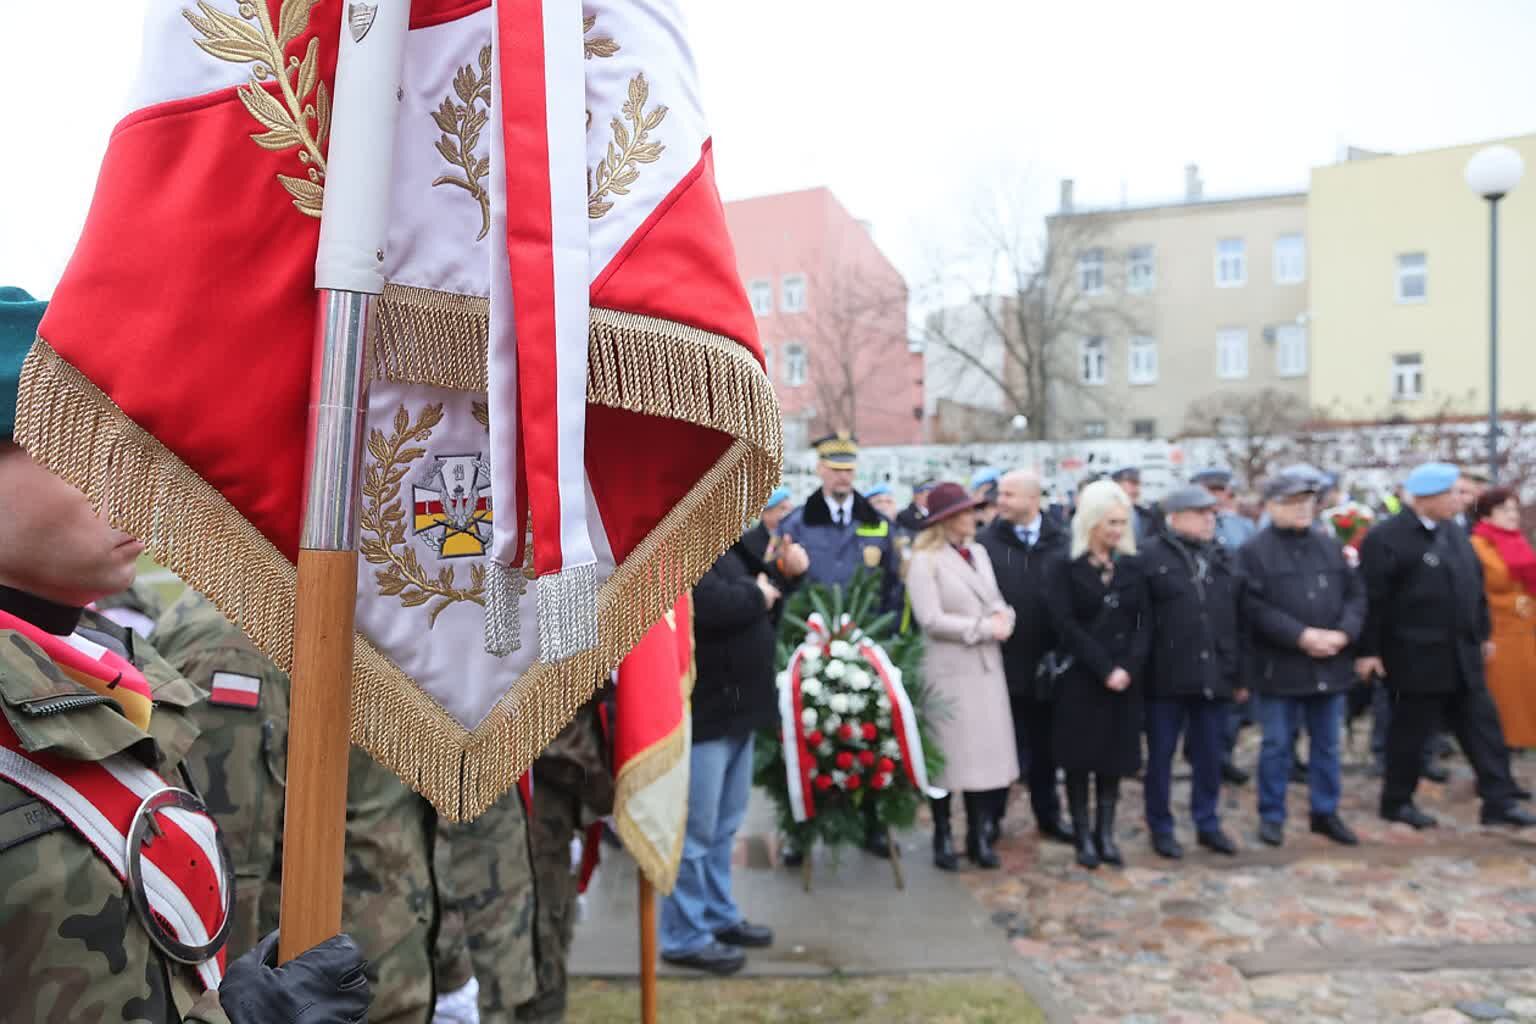 Osoba trzymająca sztandar z polskimi symbolami narodowymi; grupa ludzi w tle podczas oficjalnej uroczystości.